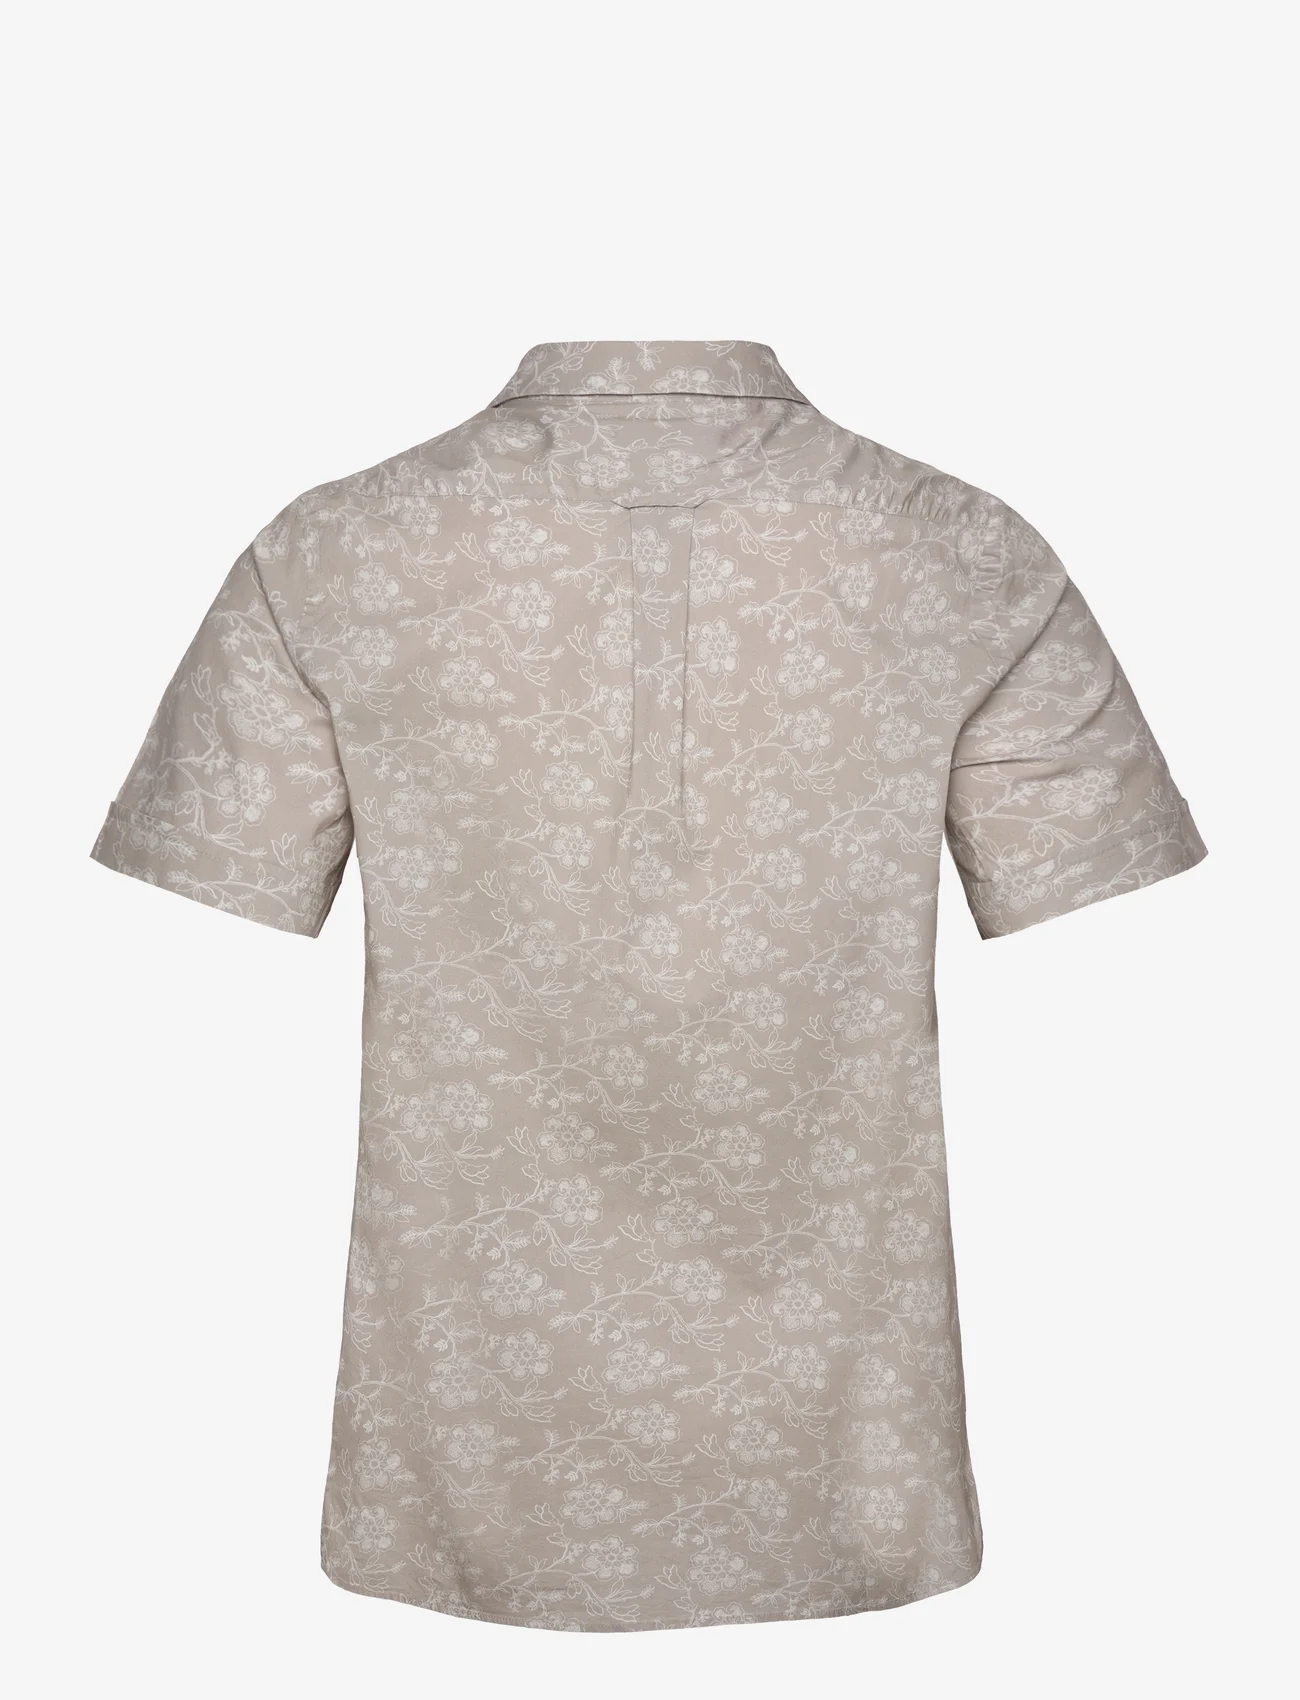 Morris - Printed Short Sleeve Shirt - kurzarmhemden - khaki - 1